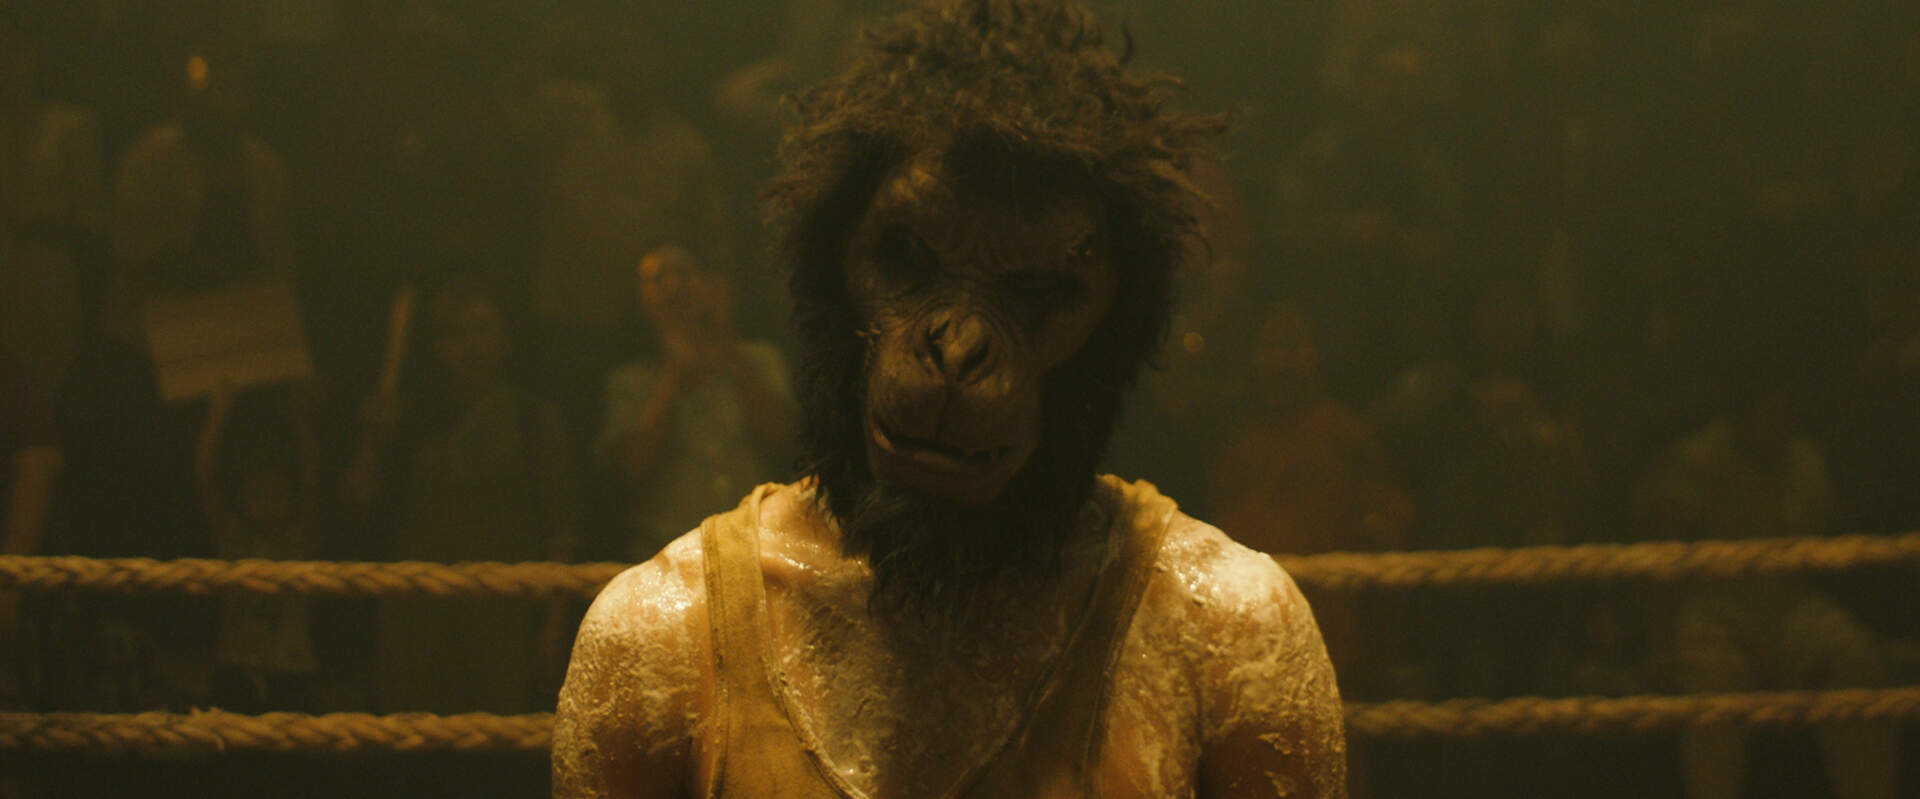 Monkey Man - Szenenbild 2 von 7